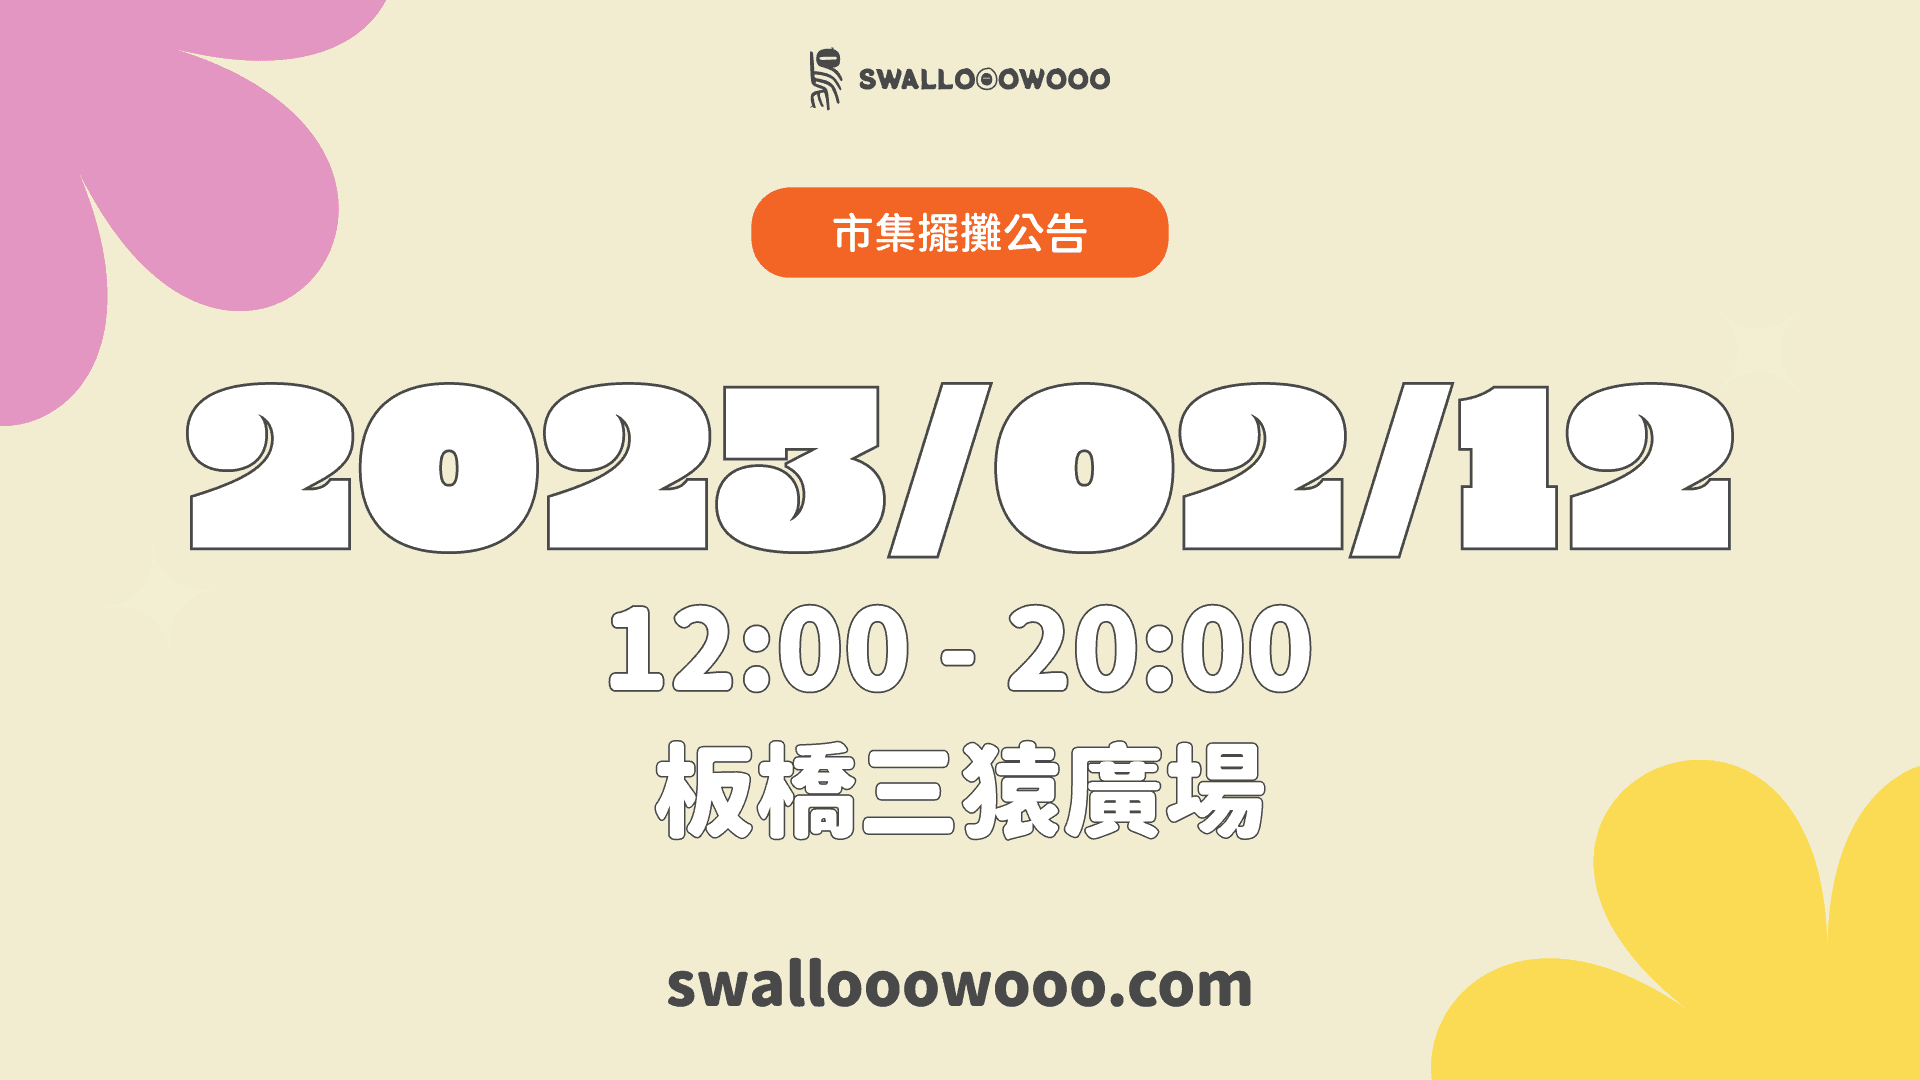 板橋三猿廣場-市集擺攤-1920-1080-bazaar-swallooowooo